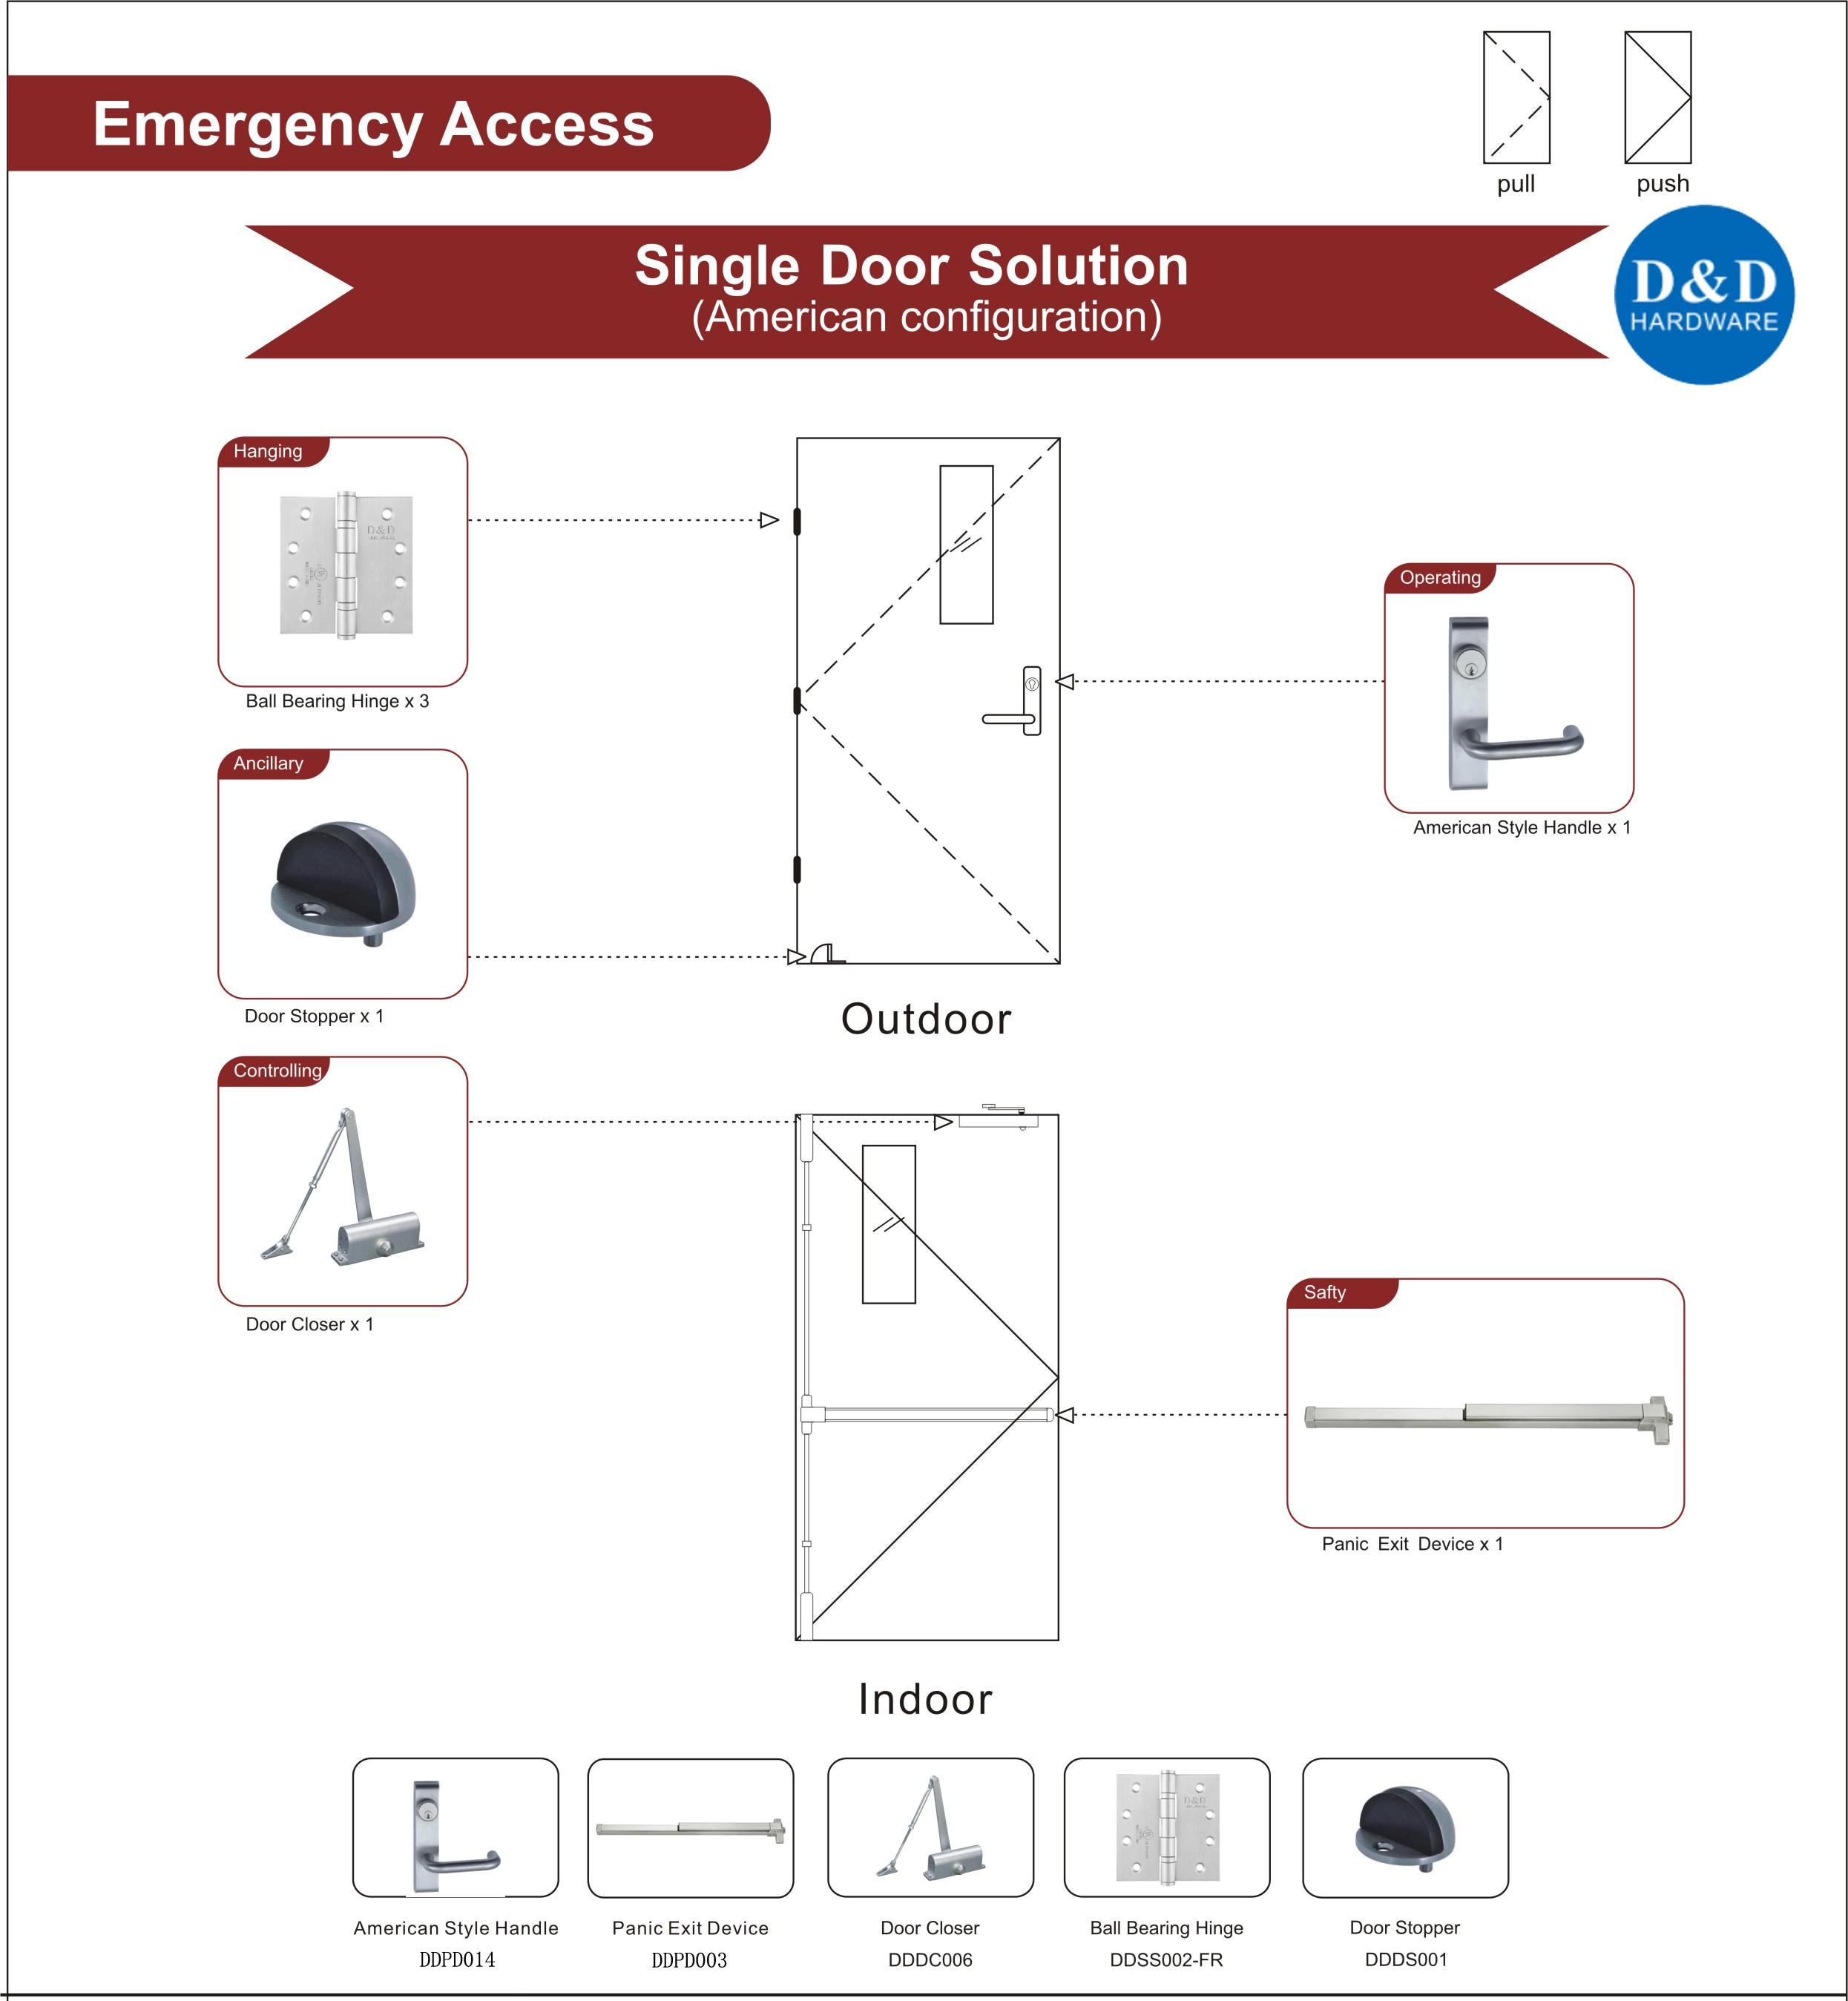 Fire Rated Steel Door Hardware for Emergency Access Single Door